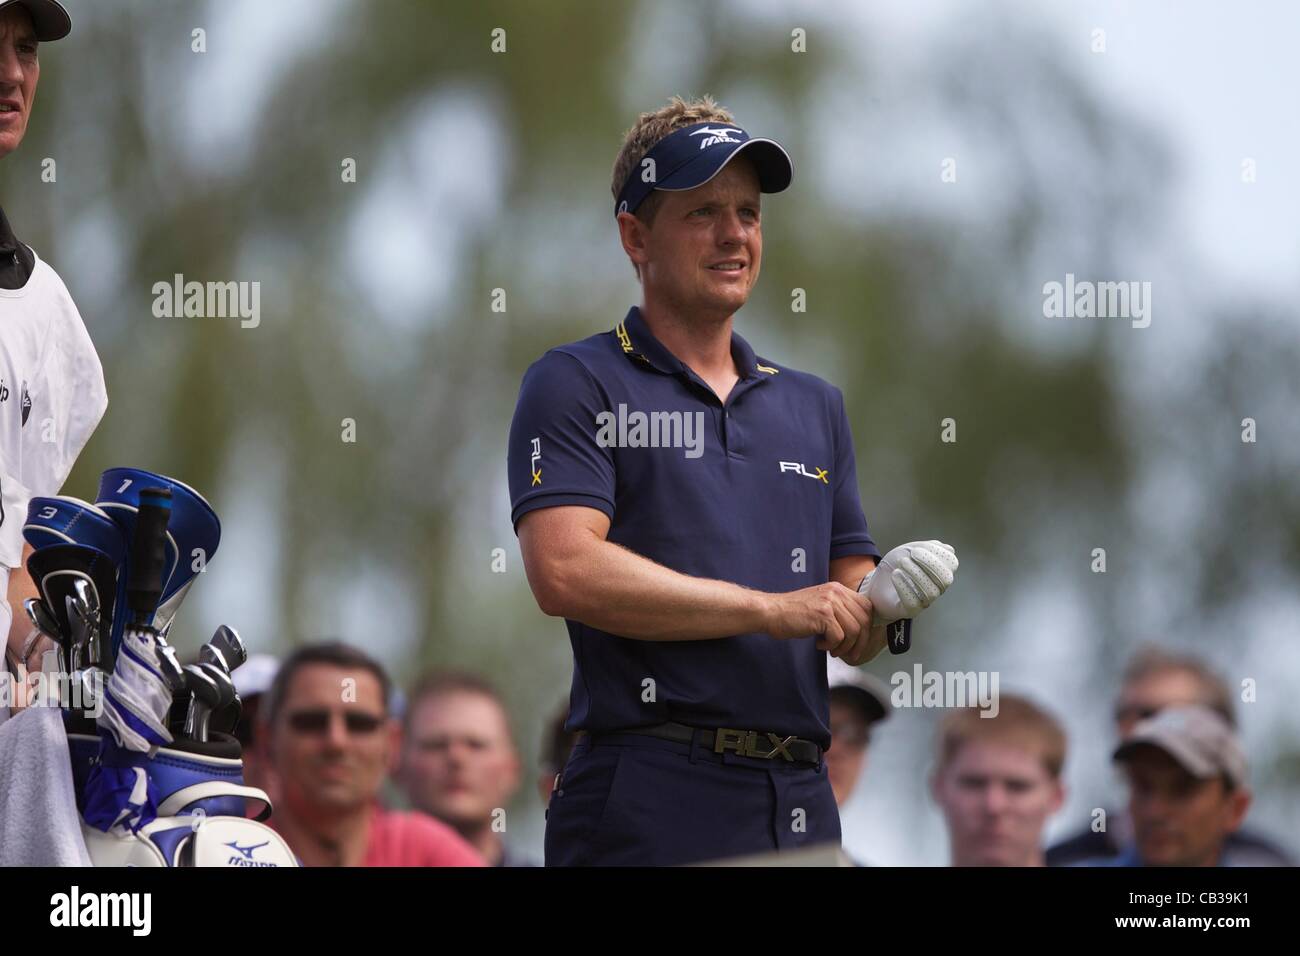 27.05.2012 Wentworth, Inghilterra. Luke Donald (ITA) in azione il giorno finale della BMW campionato di PGA. Foto Stock